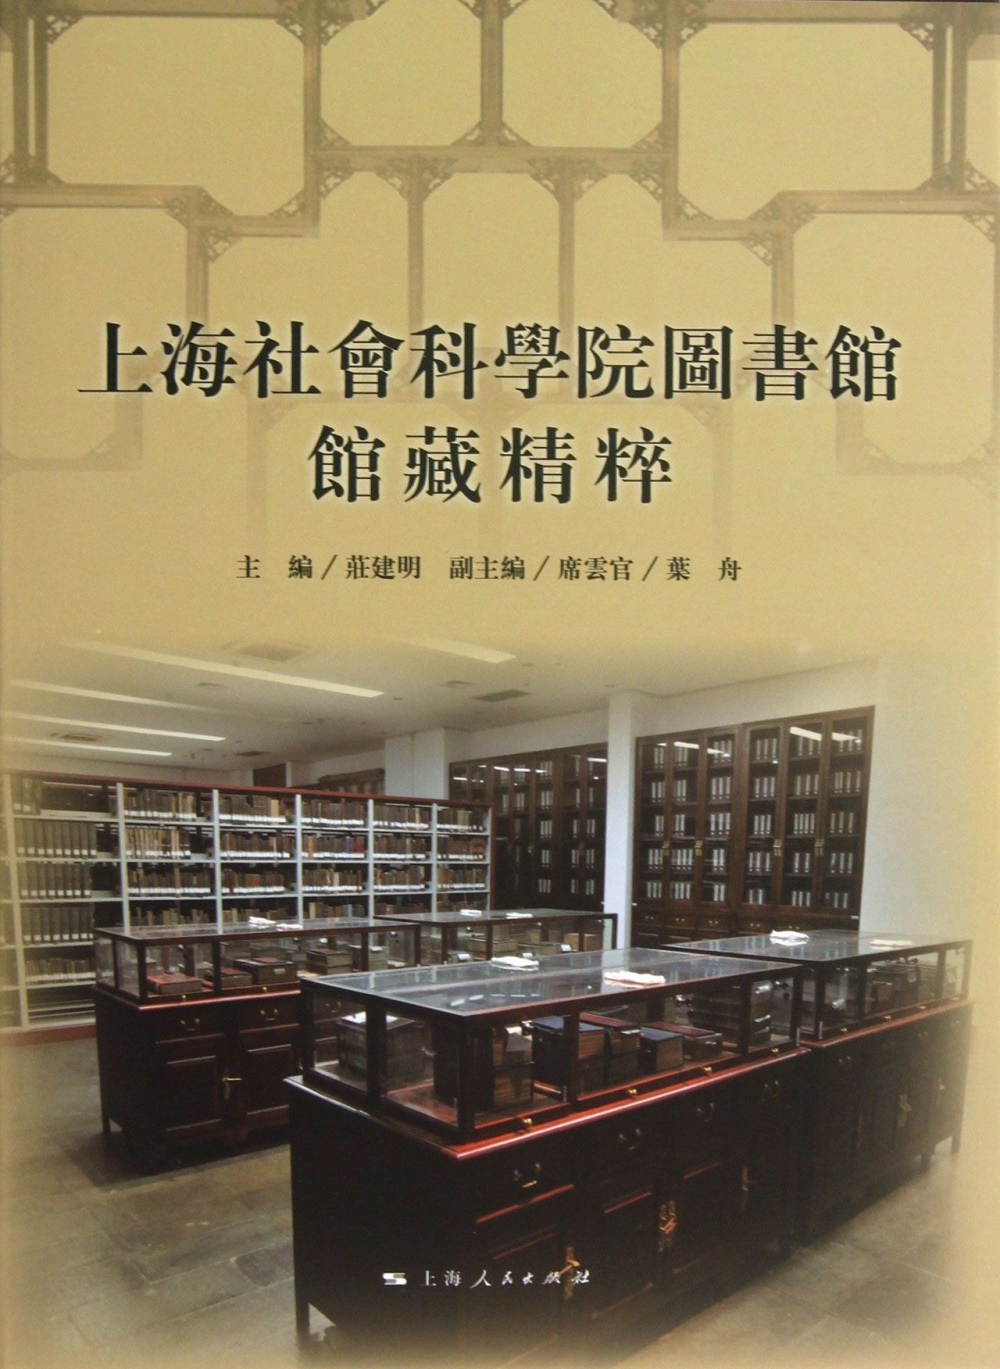 上海社會科學院圖書館館藏精粹